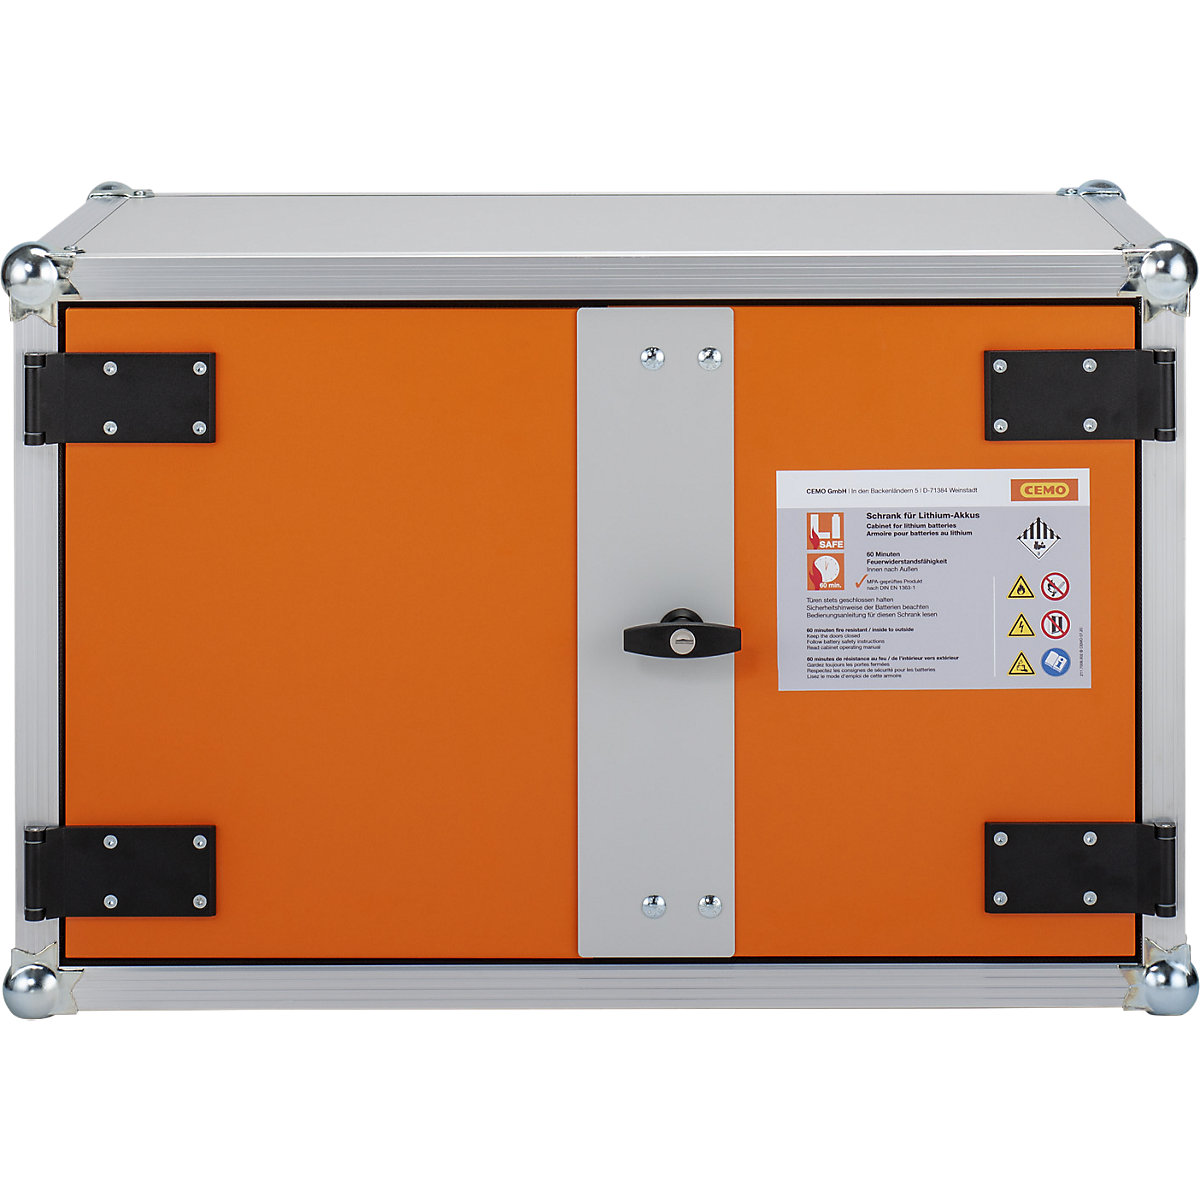 Varnostna omara za skladiščenje akumulatorjev, možnost priklopa požarnega alarma - CEMO